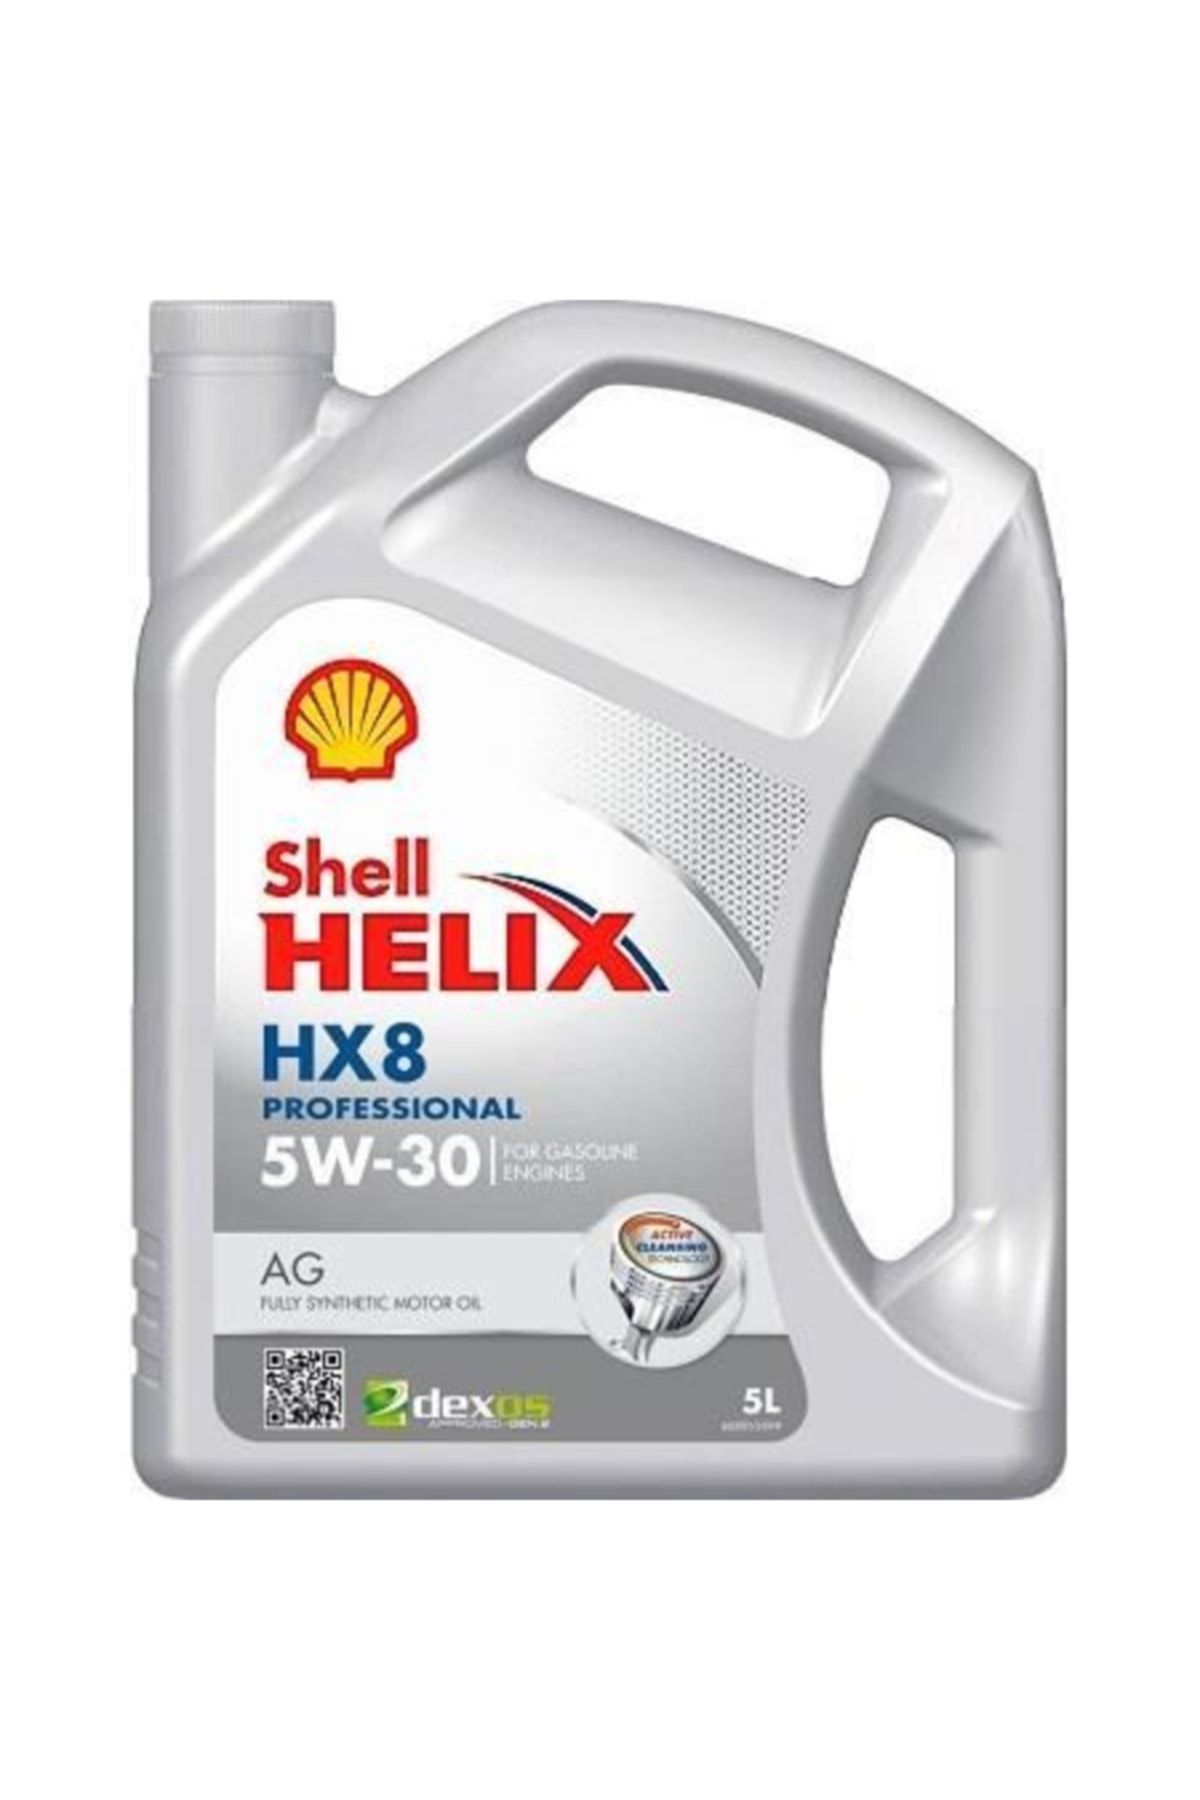 Shell HELİX HX8 AG 5W30 5 L-DEXOS 1 GEN2/FORD WSS-M2C946-B1 Fiyatı